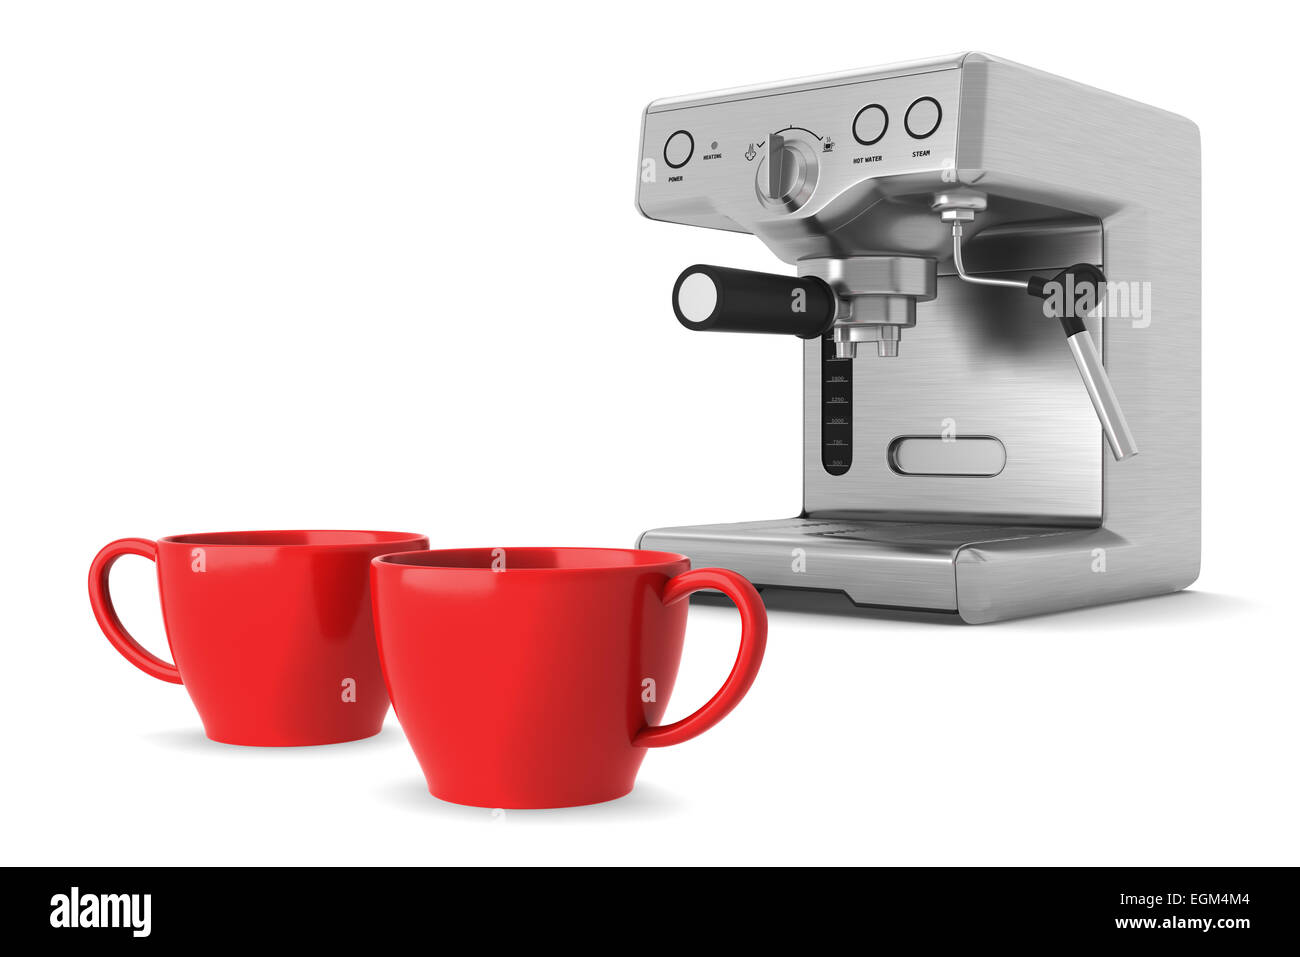 1,736 imágenes de Red coffee making machine - Imágenes, fotos y